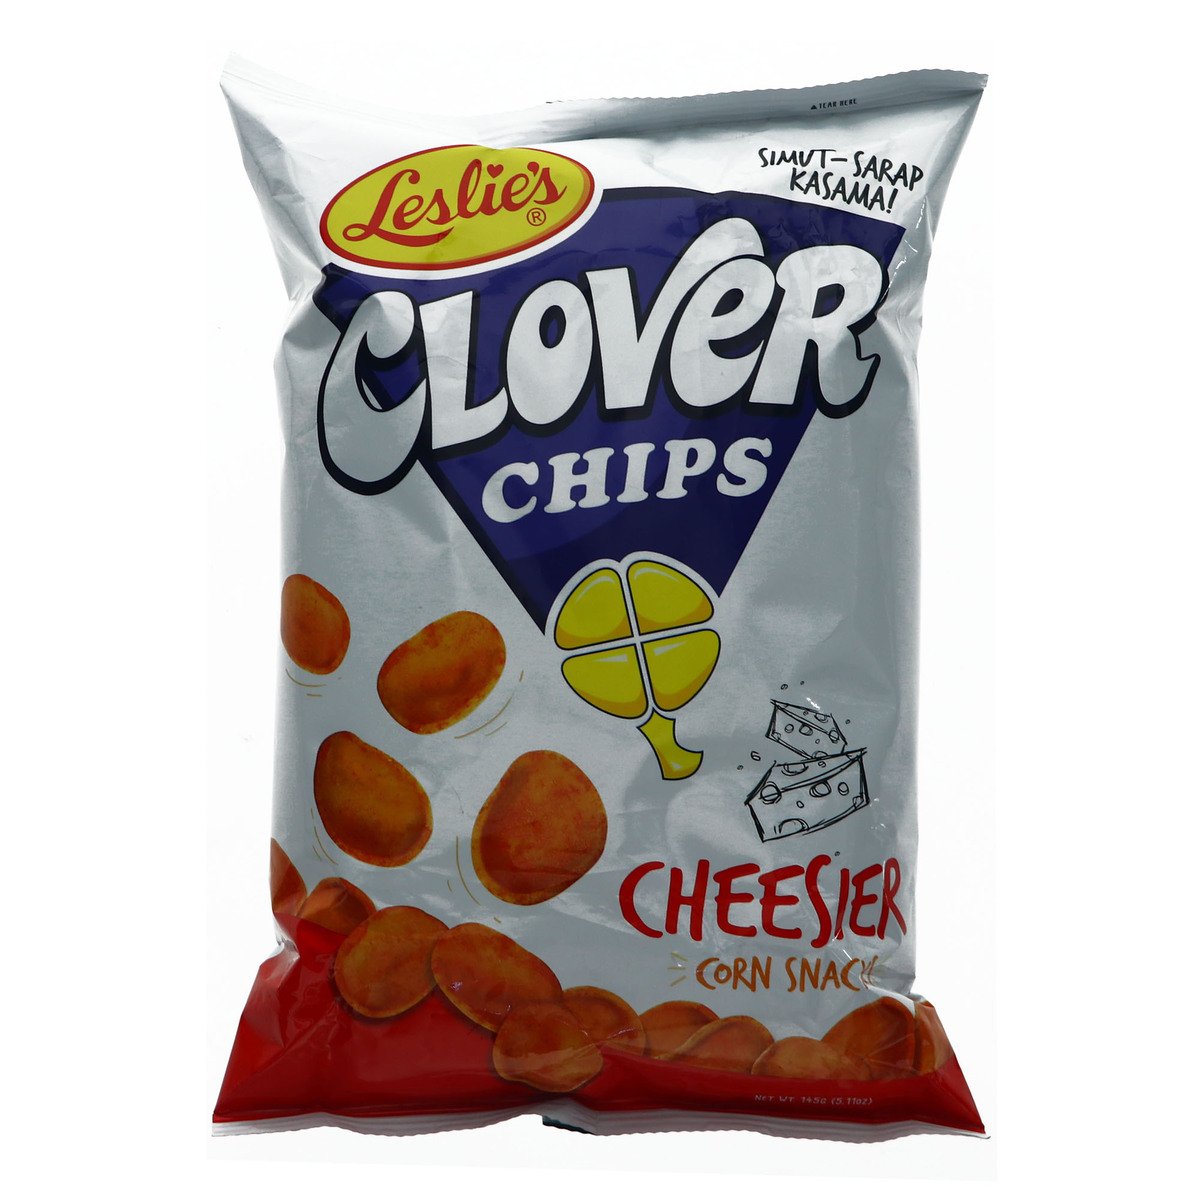 Leslie's Clover Chips Cheesier Corn Snack 145 g